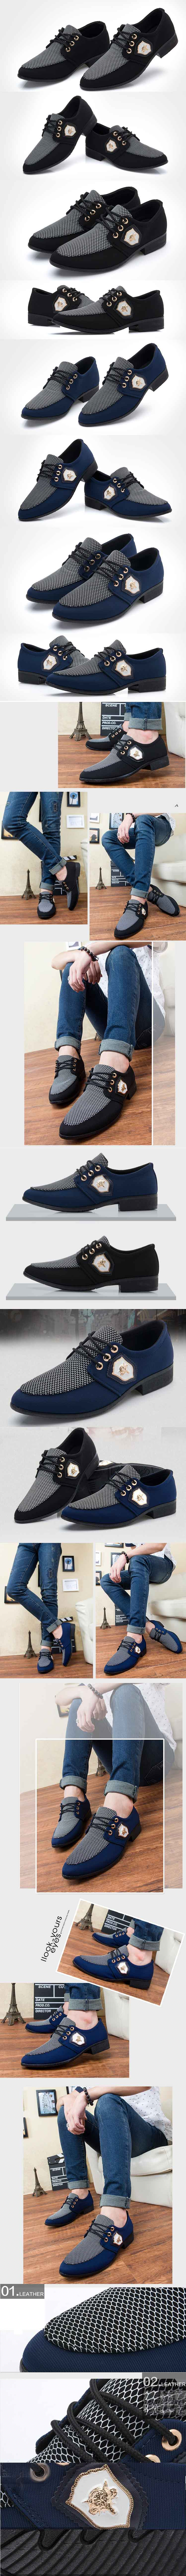 cari sepatu kerja pria model terbaru dengan model lancip ? klik dan pesan online di pfp store. koleksi terlengkap sepatu kerja pria